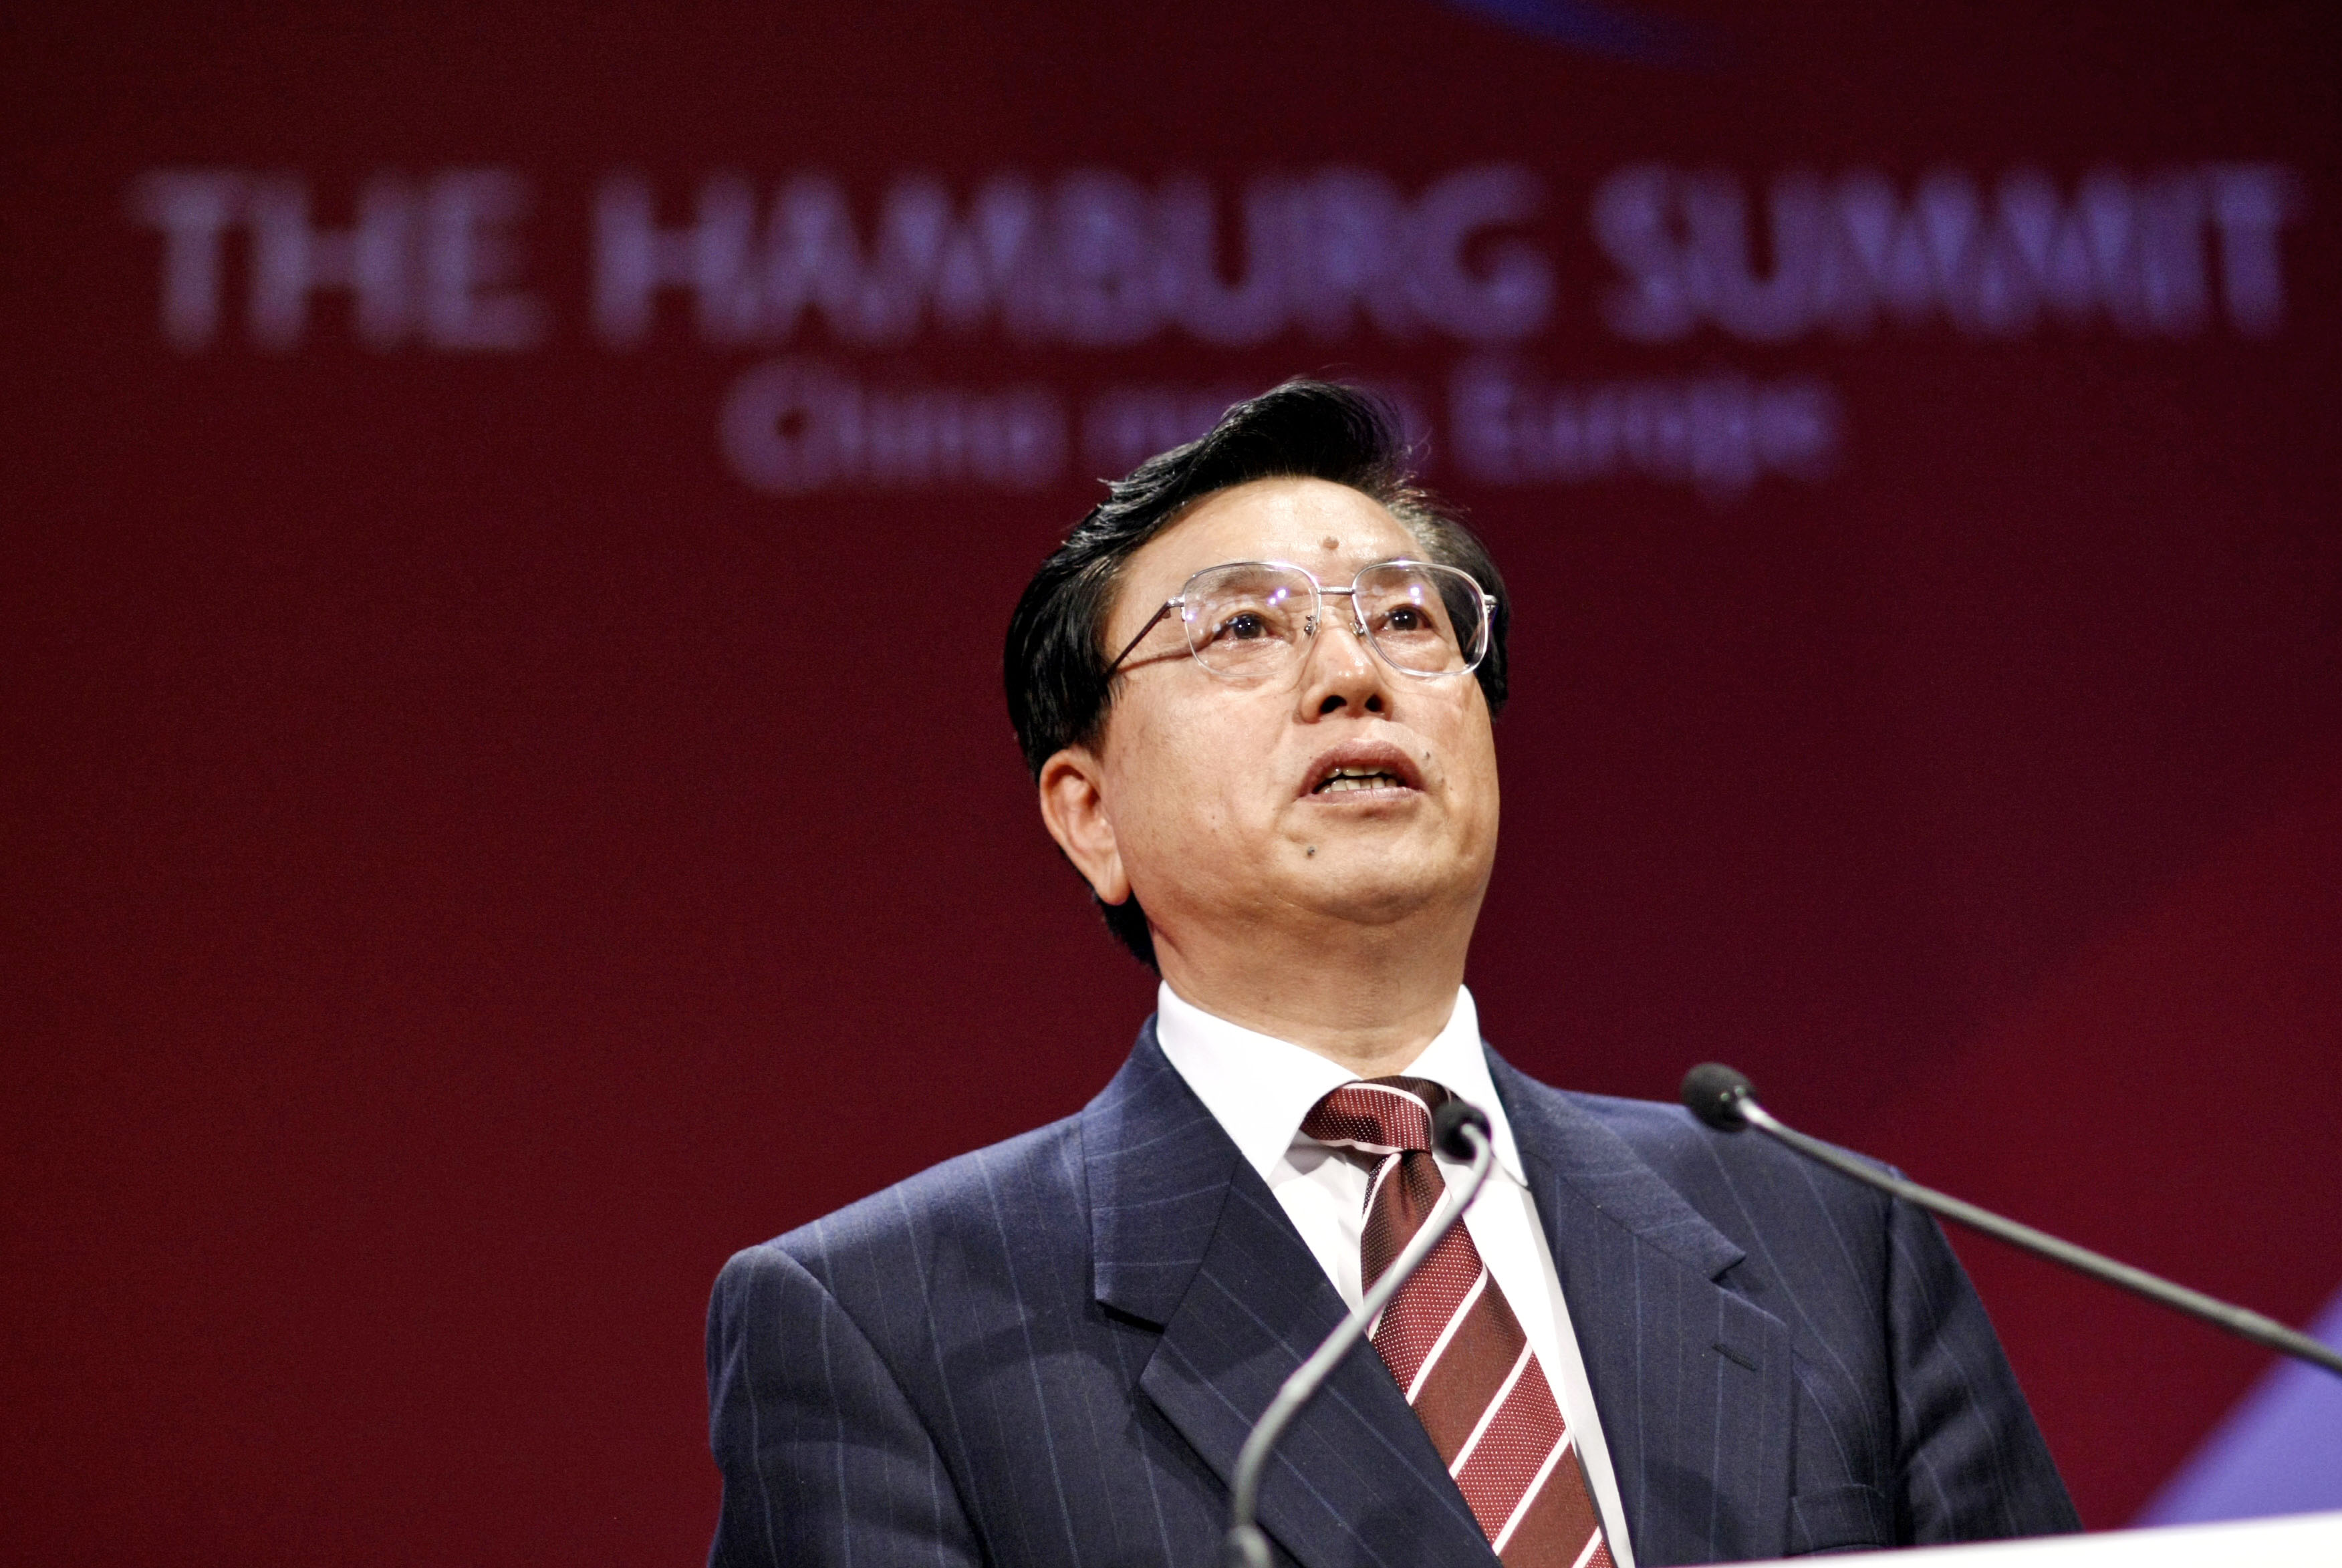 Menschrechtler gegen Hamburg Besuch des chinesischen Vize Premiers